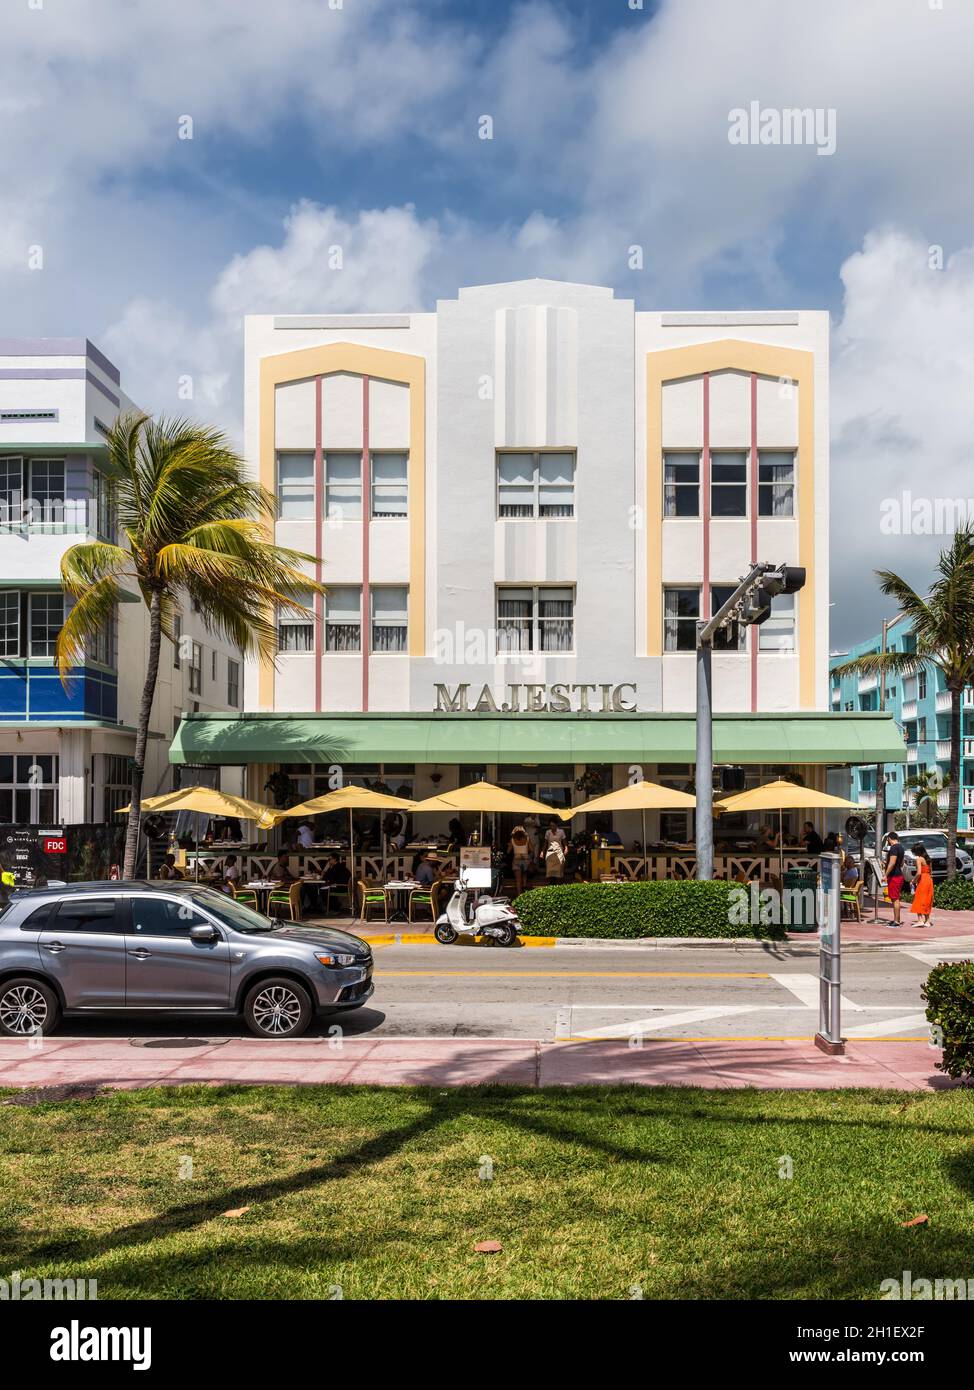 Miami, FL, EEUU - Abril 19, 2019: El majestuoso hotel de South Beach, en el histórico distrito Art Deco de Miami con los hoteles, cafés y restaurantes en oceaní Foto de stock